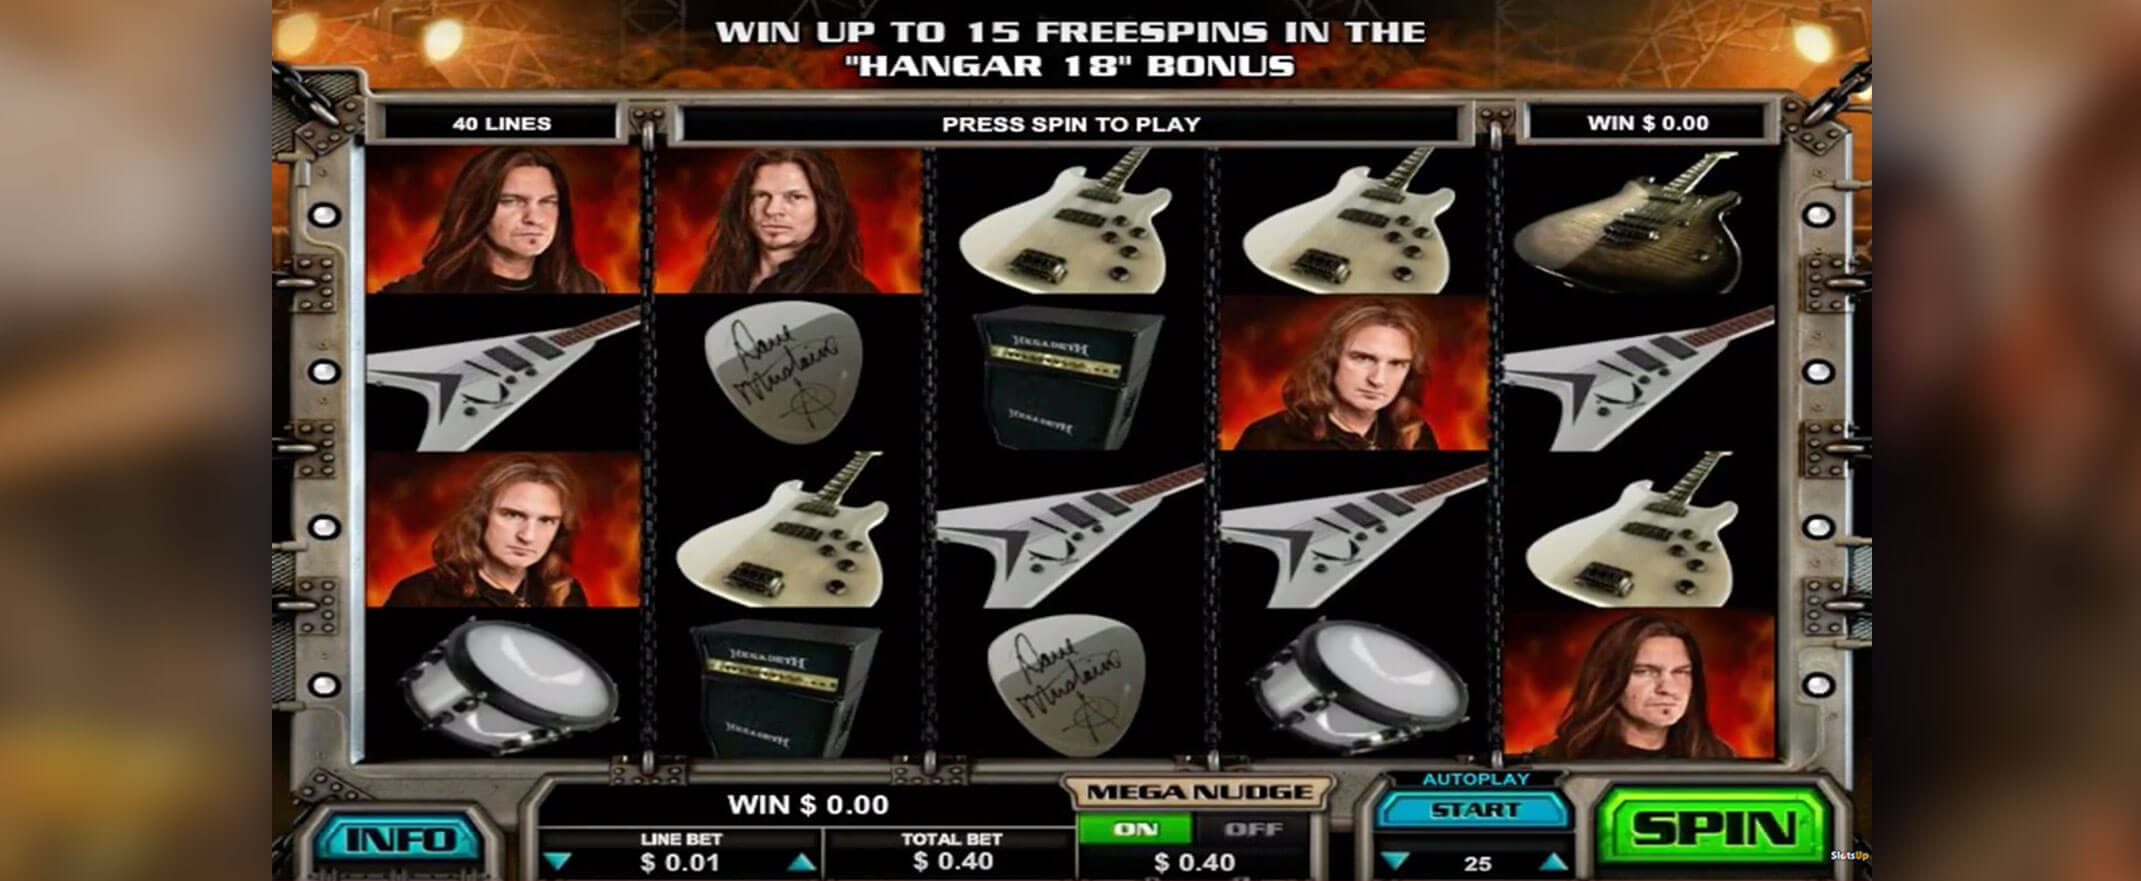 Megadeth peliautomaatti Leanderilta